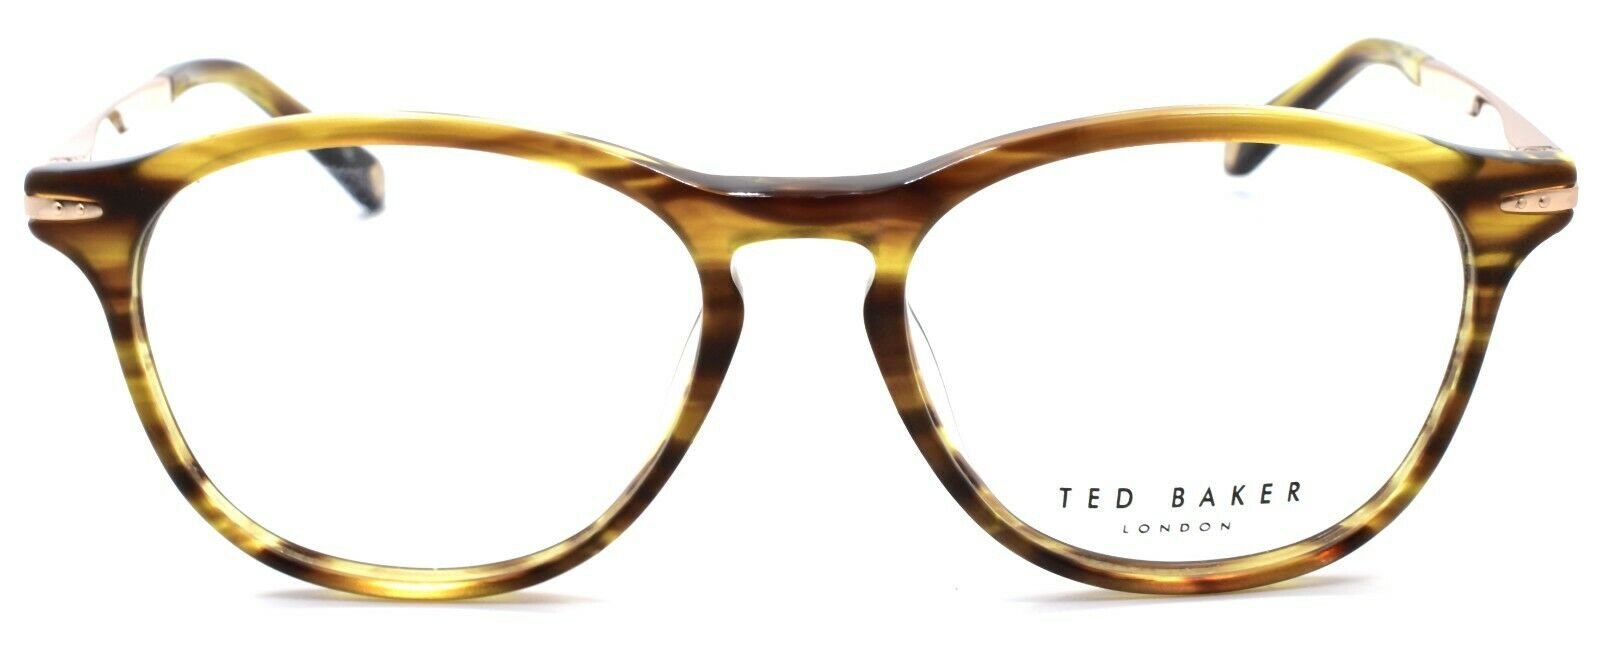 2-Ted Baker Finch 8160 105 Men's Eyeglasses Frames 50-16-140 Amber Horn-4894327181117-IKSpecs